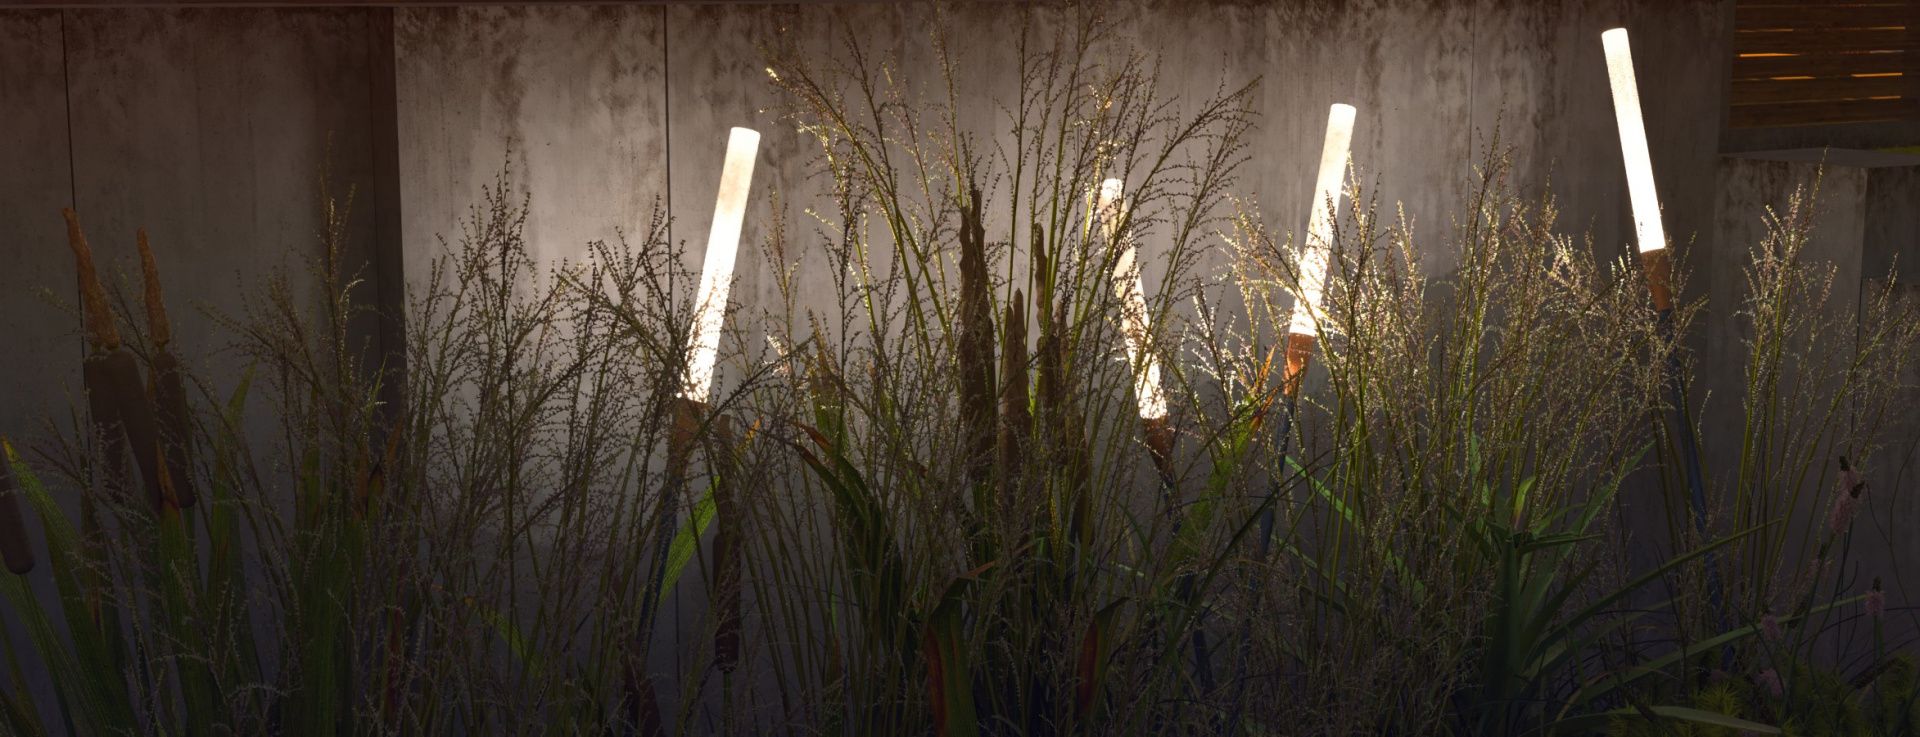 Reeds. Купить LED светильники Reeds RADUGA от производителя. Заказать ландшафтный светодиодный светильник.